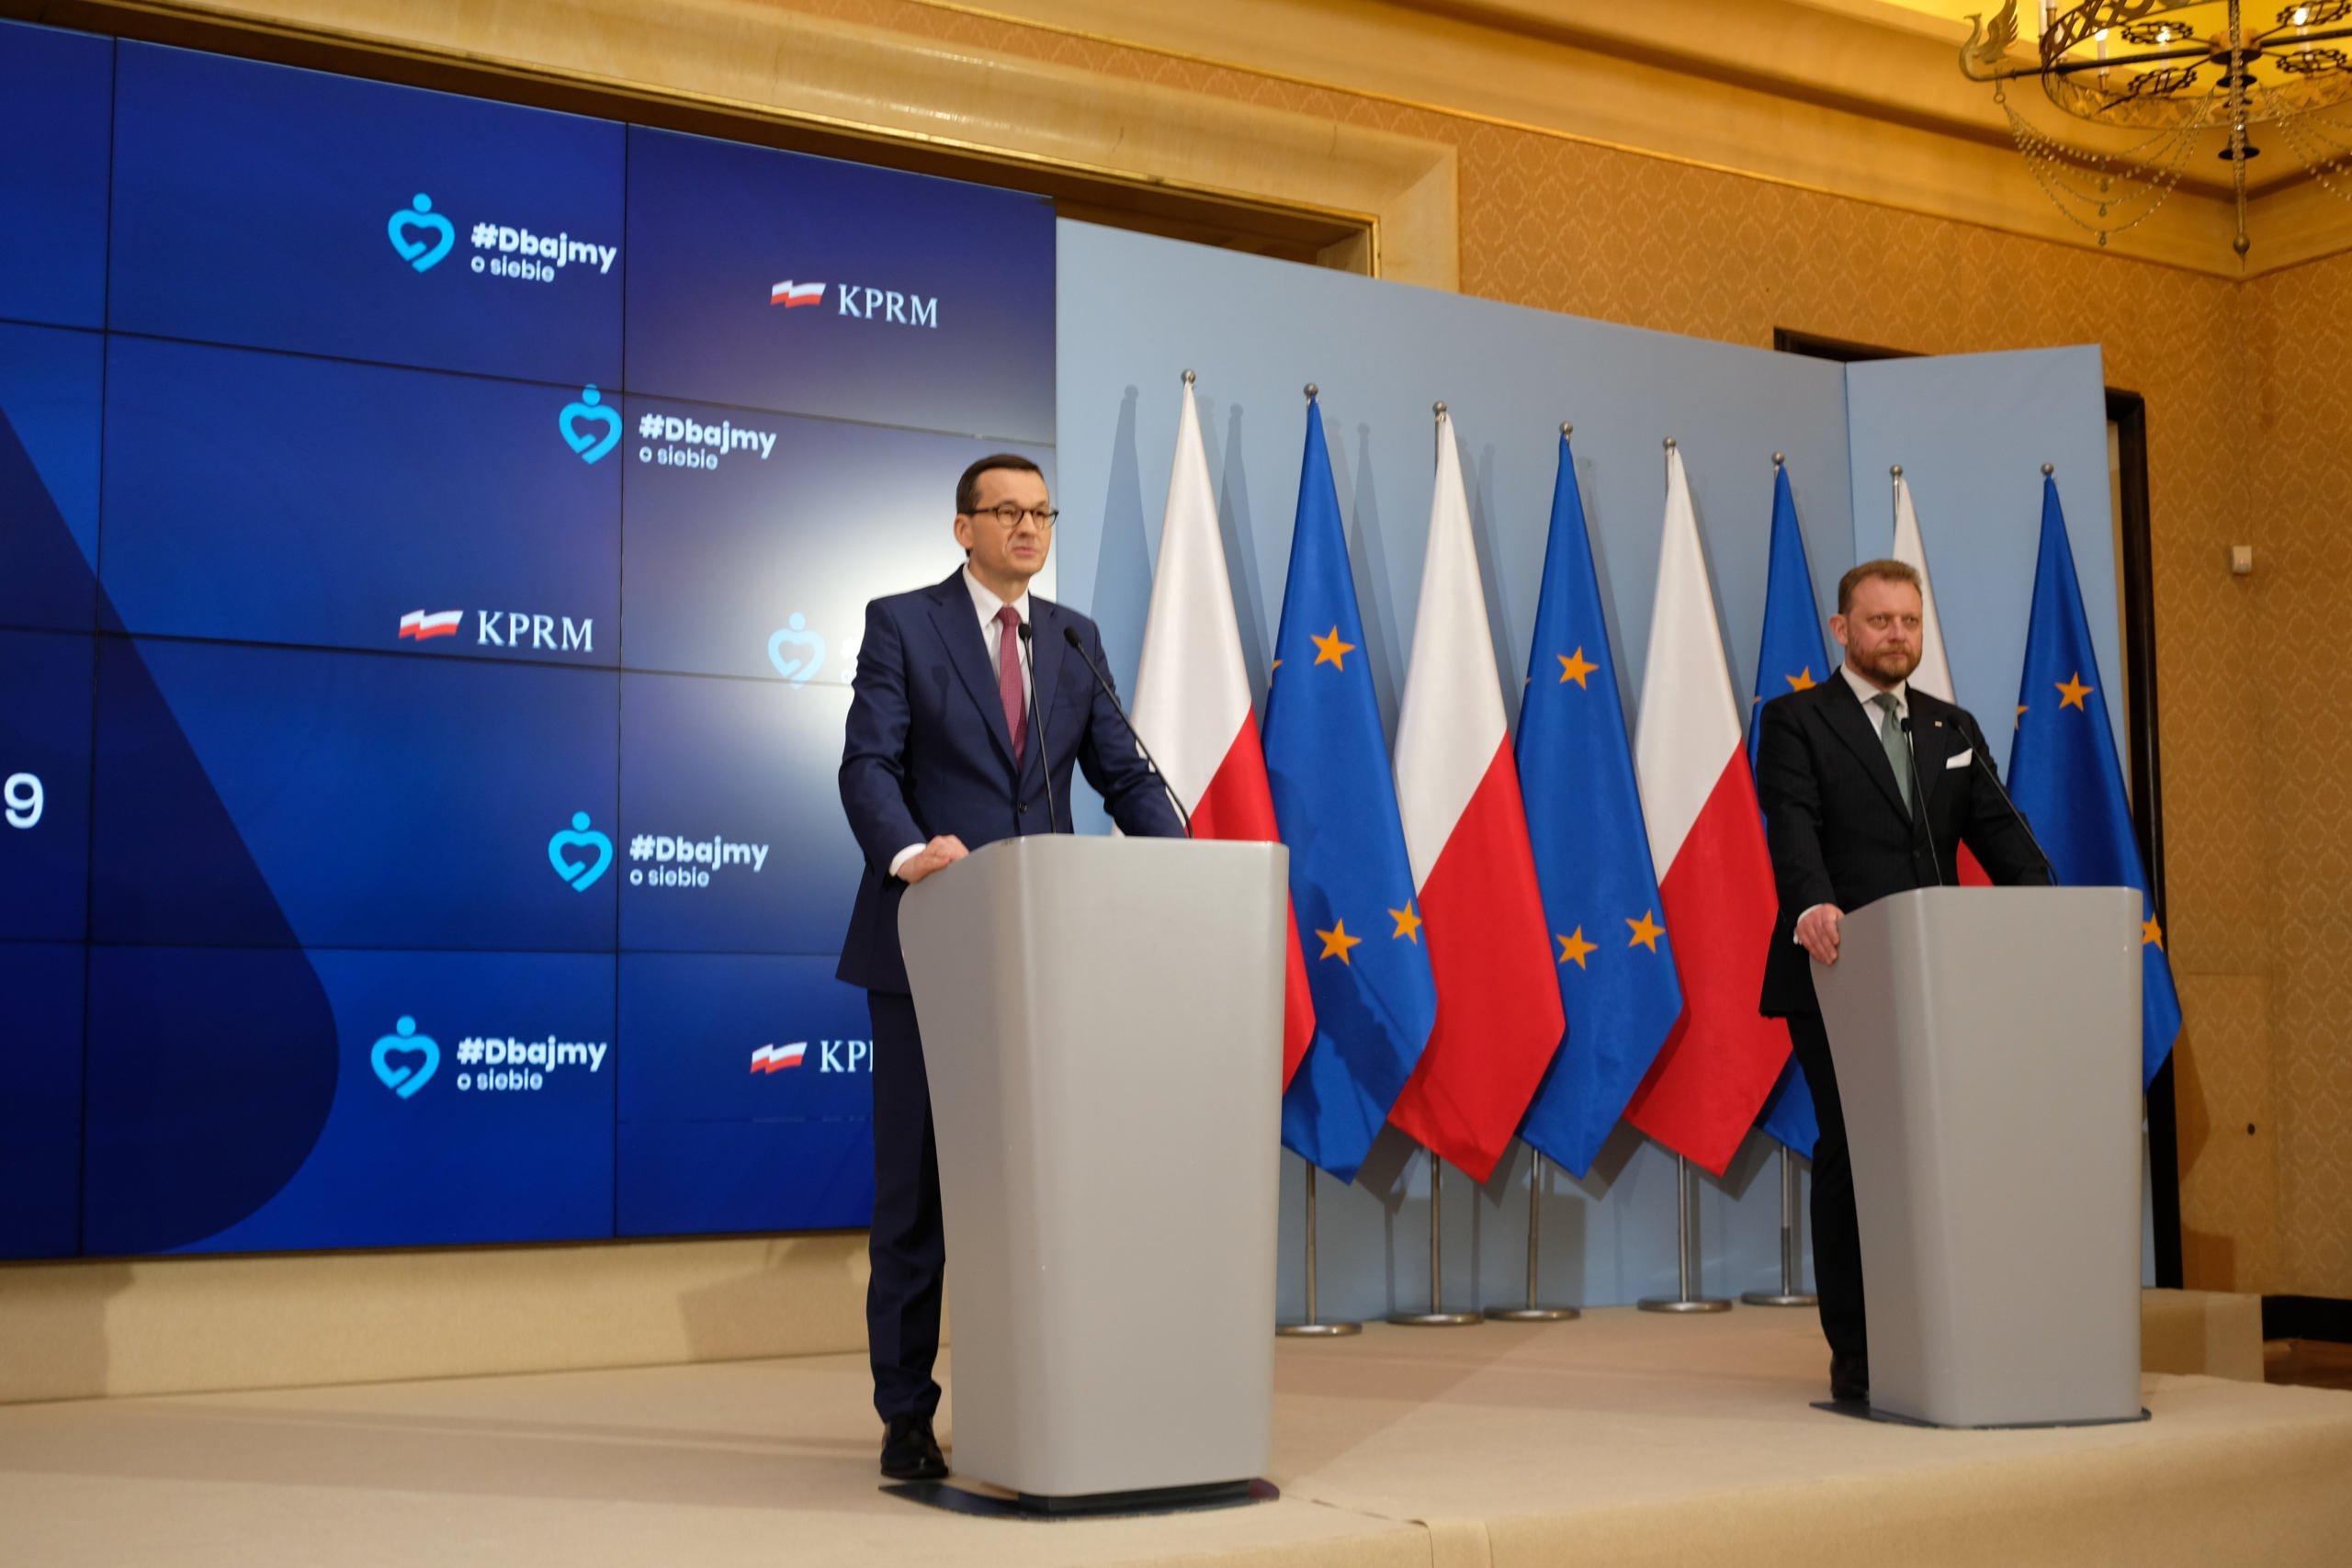 Odmrażanie kraju - premier Morawiecki zapowiada kolejny etap znoszenia obostrzeń